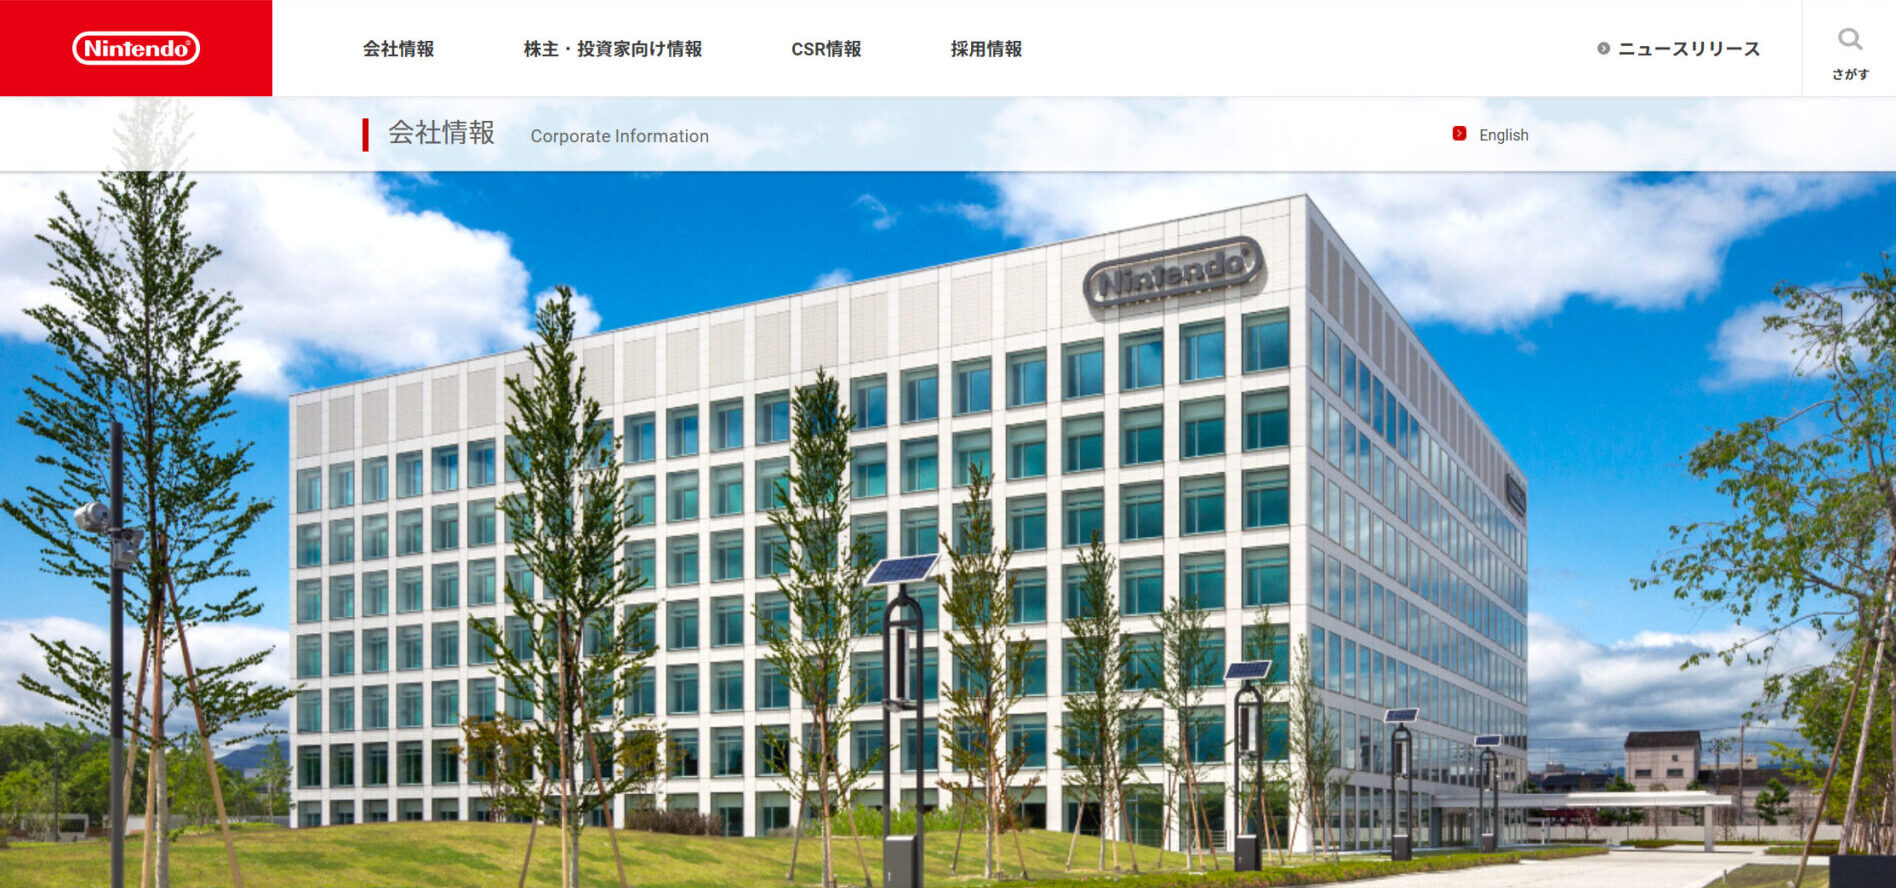 任天堂株式会社のトップページ